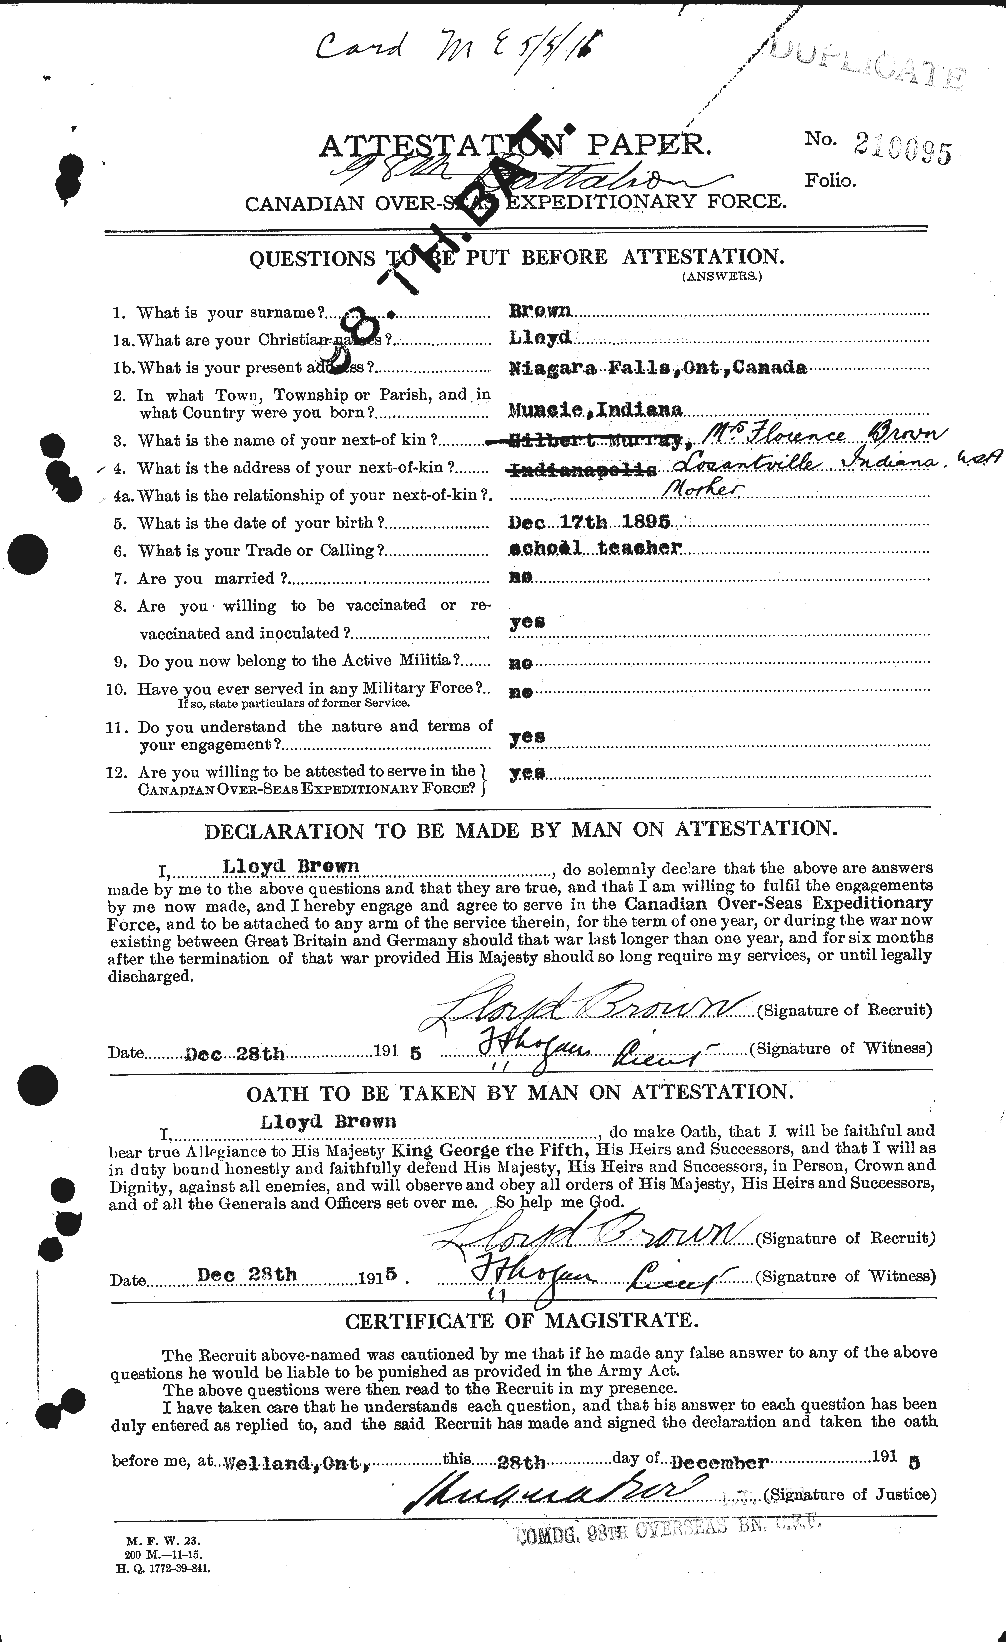 Dossiers du Personnel de la Première Guerre mondiale - CEC 266326a